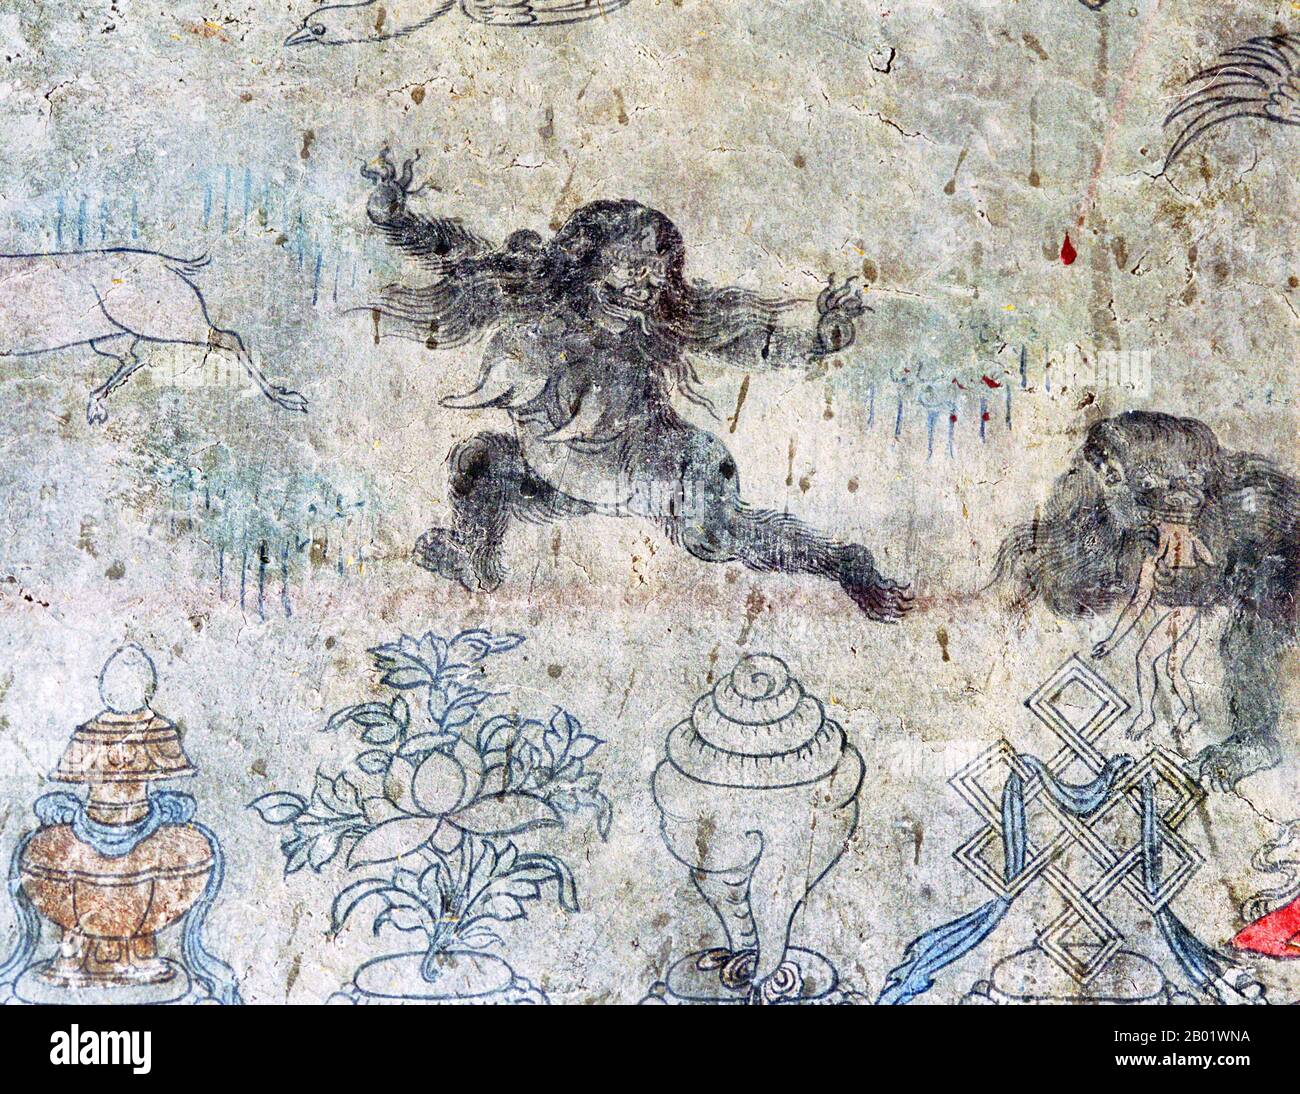 China/Tibet: Tibetisches Wandbild, das zwei "Migo" oder Yeti zeigt, einer rechts einen Menschen verzehrt, ca. Ende des 19. Jahrhunderts. Der Yeti oder Greuel Snowman ist eine affenähnliche Kryptide, die angeblich in der Himalaya-Region Nepals und Tibets leben soll. Die Namen Yeti und Meh-Teh werden häufig von den Einheimischen der Region verwendet und sind Teil ihrer Geschichte und Mythologie. Die Geschichte des Yeti tauchte erstmals im 19. Jahrhundert als Facette der westlichen Populärkultur auf. Migoi oder Mi-Go bedeutet „wilder Mann“. Stockfoto